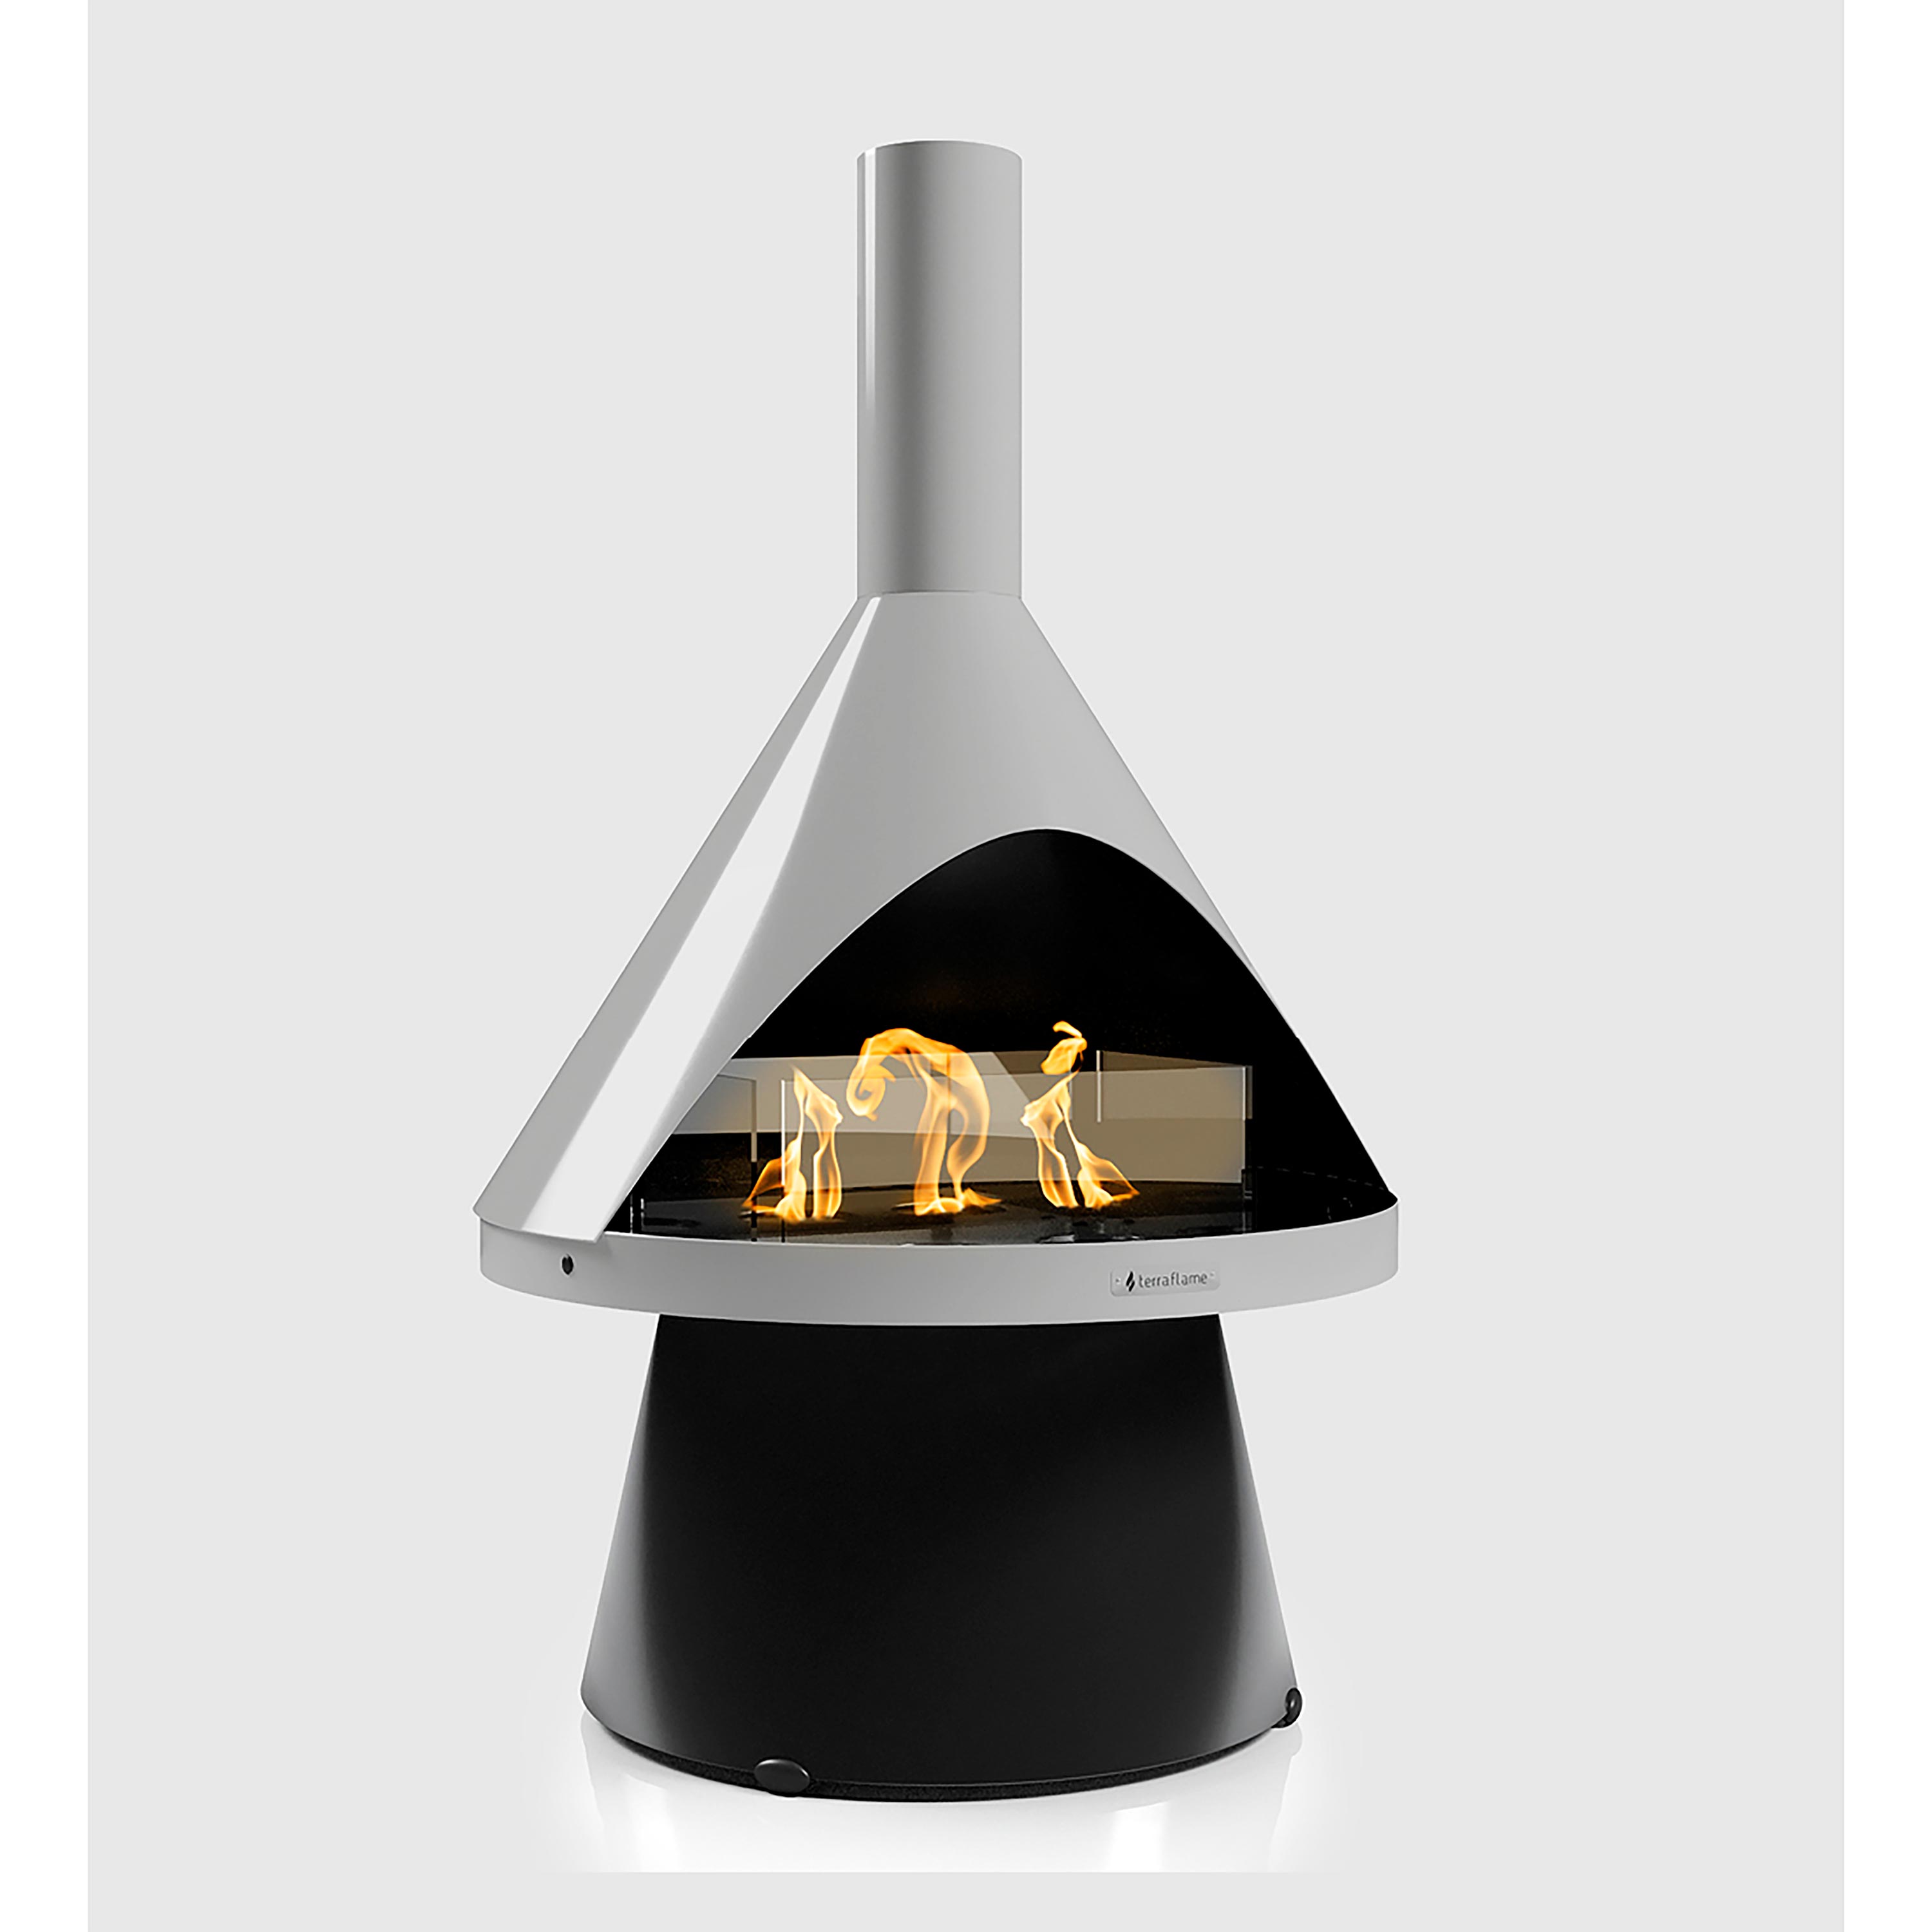 Indoor/ Outdoor Mid-Mod Gel Fuel Fireplace swatch image